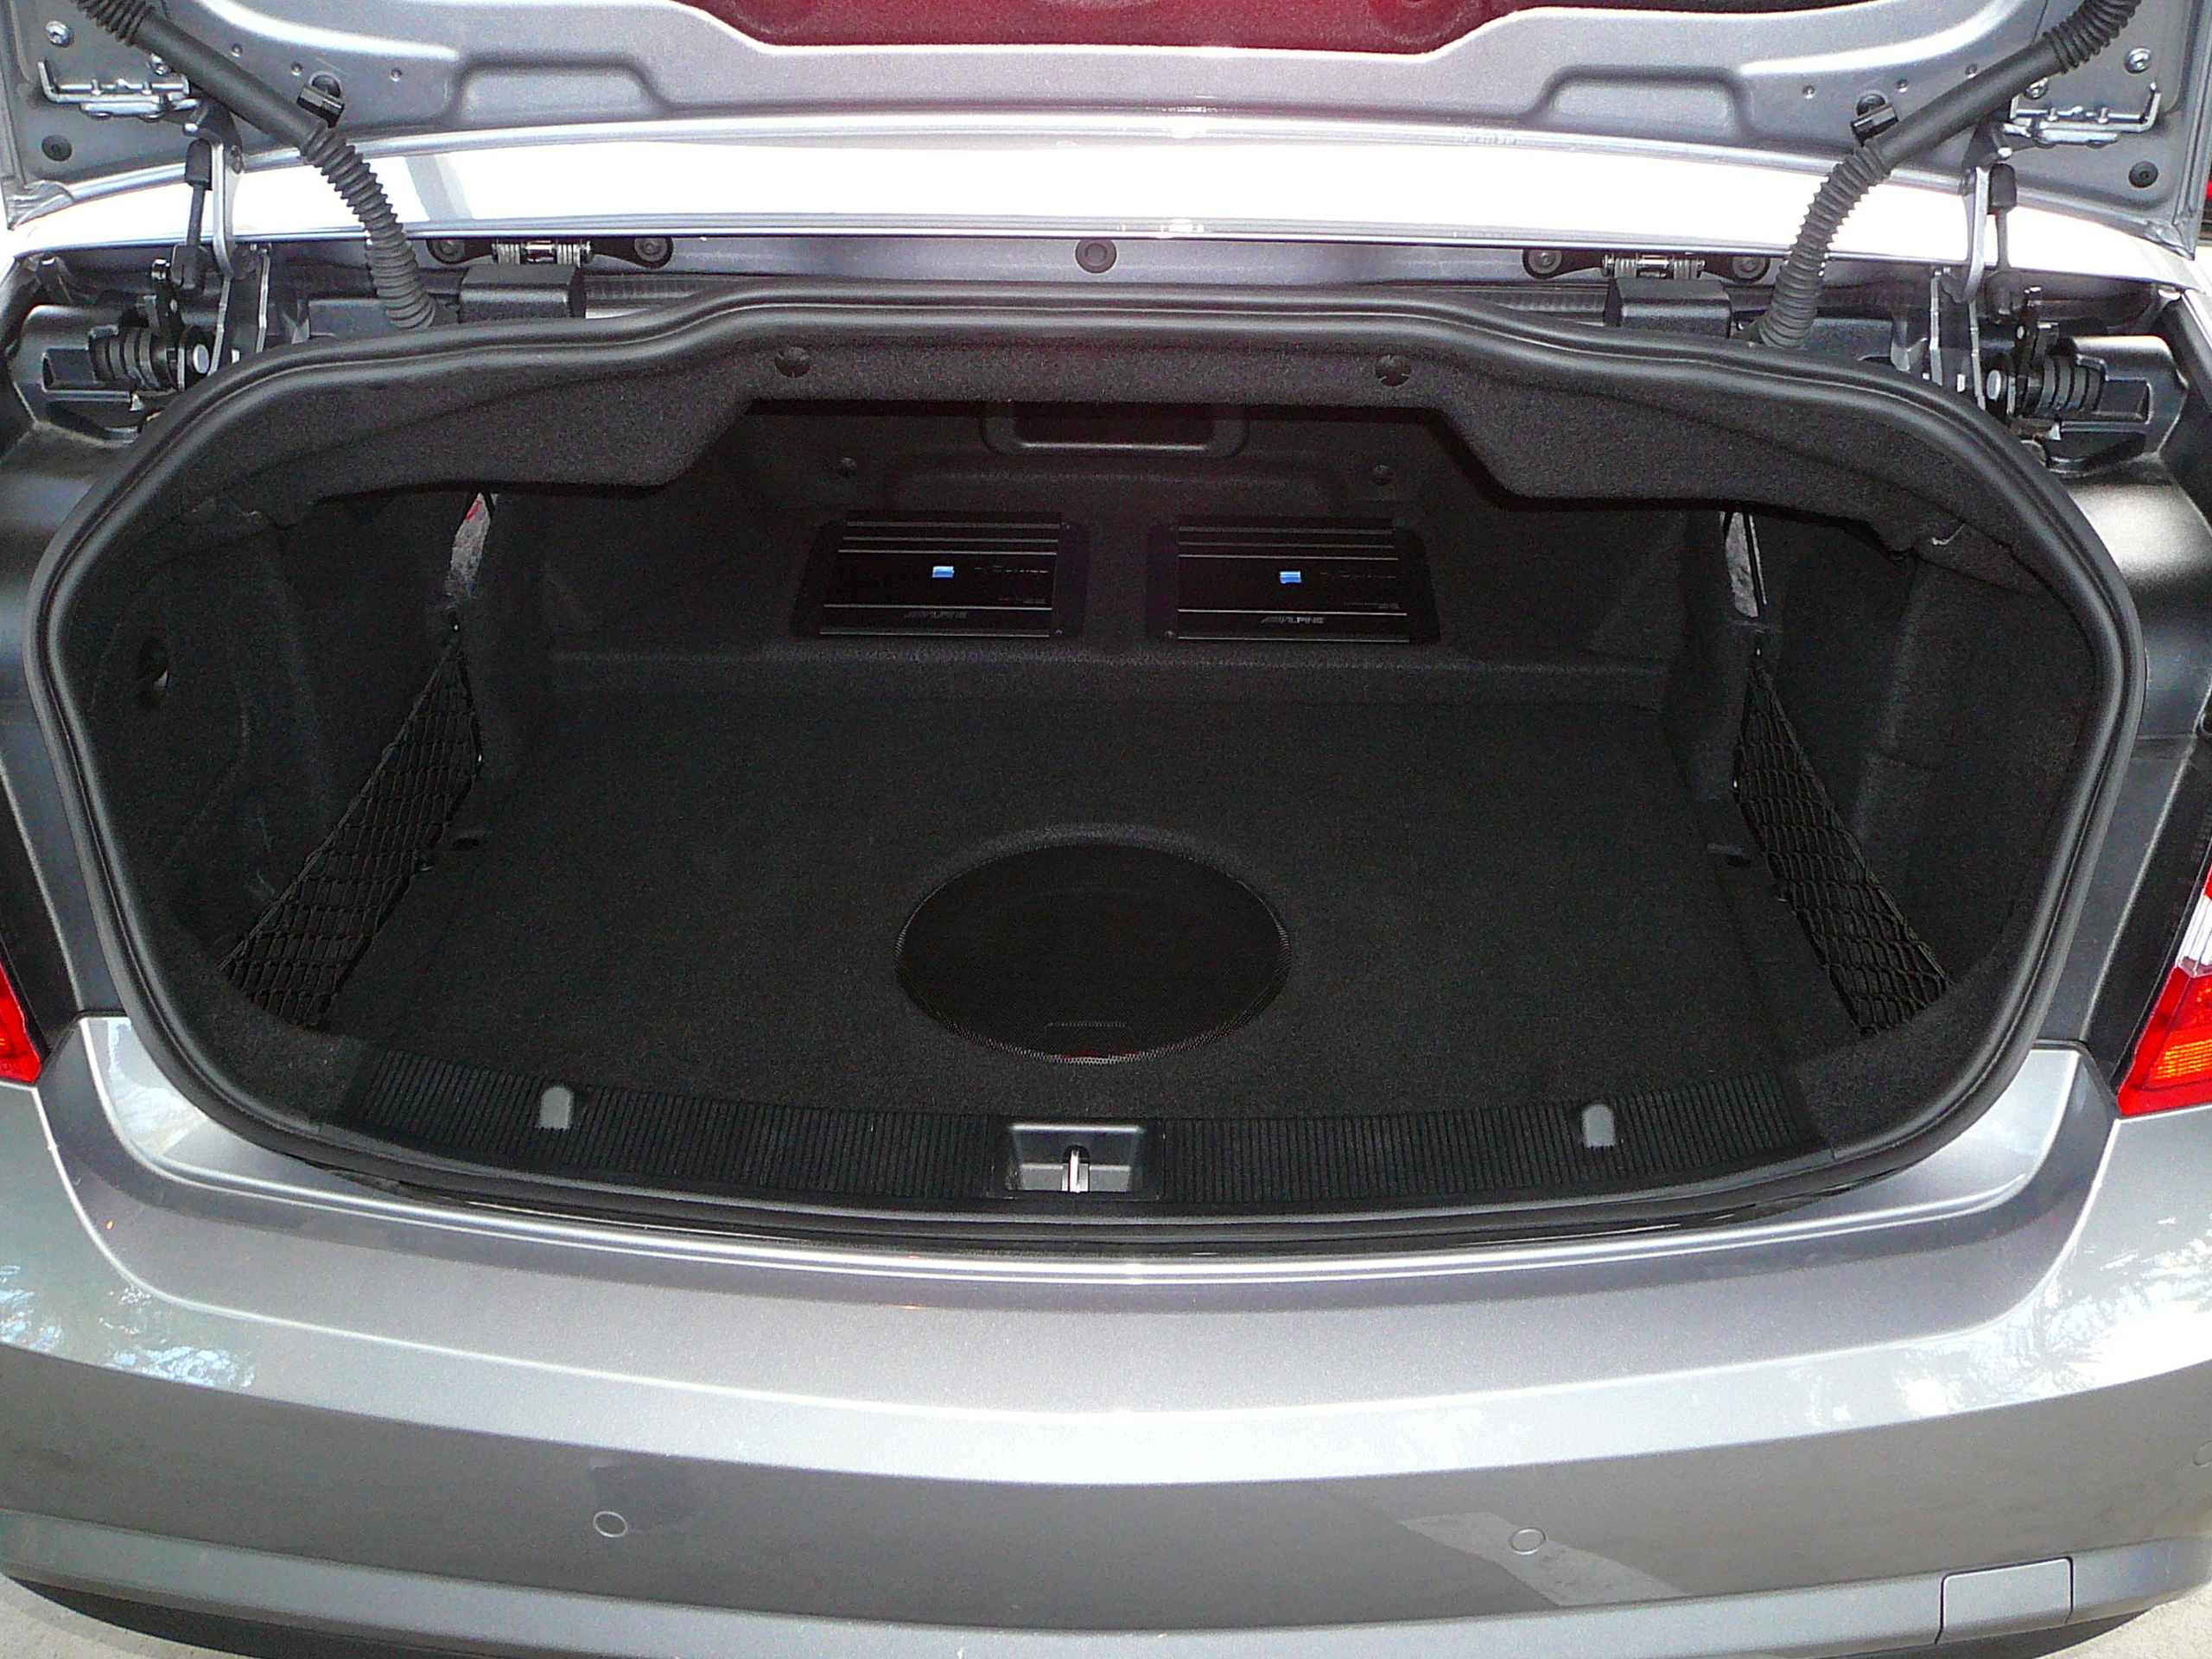 Mercedes Benz 2012 E Class, Custom Subwoofer & Amplifier Upgrade